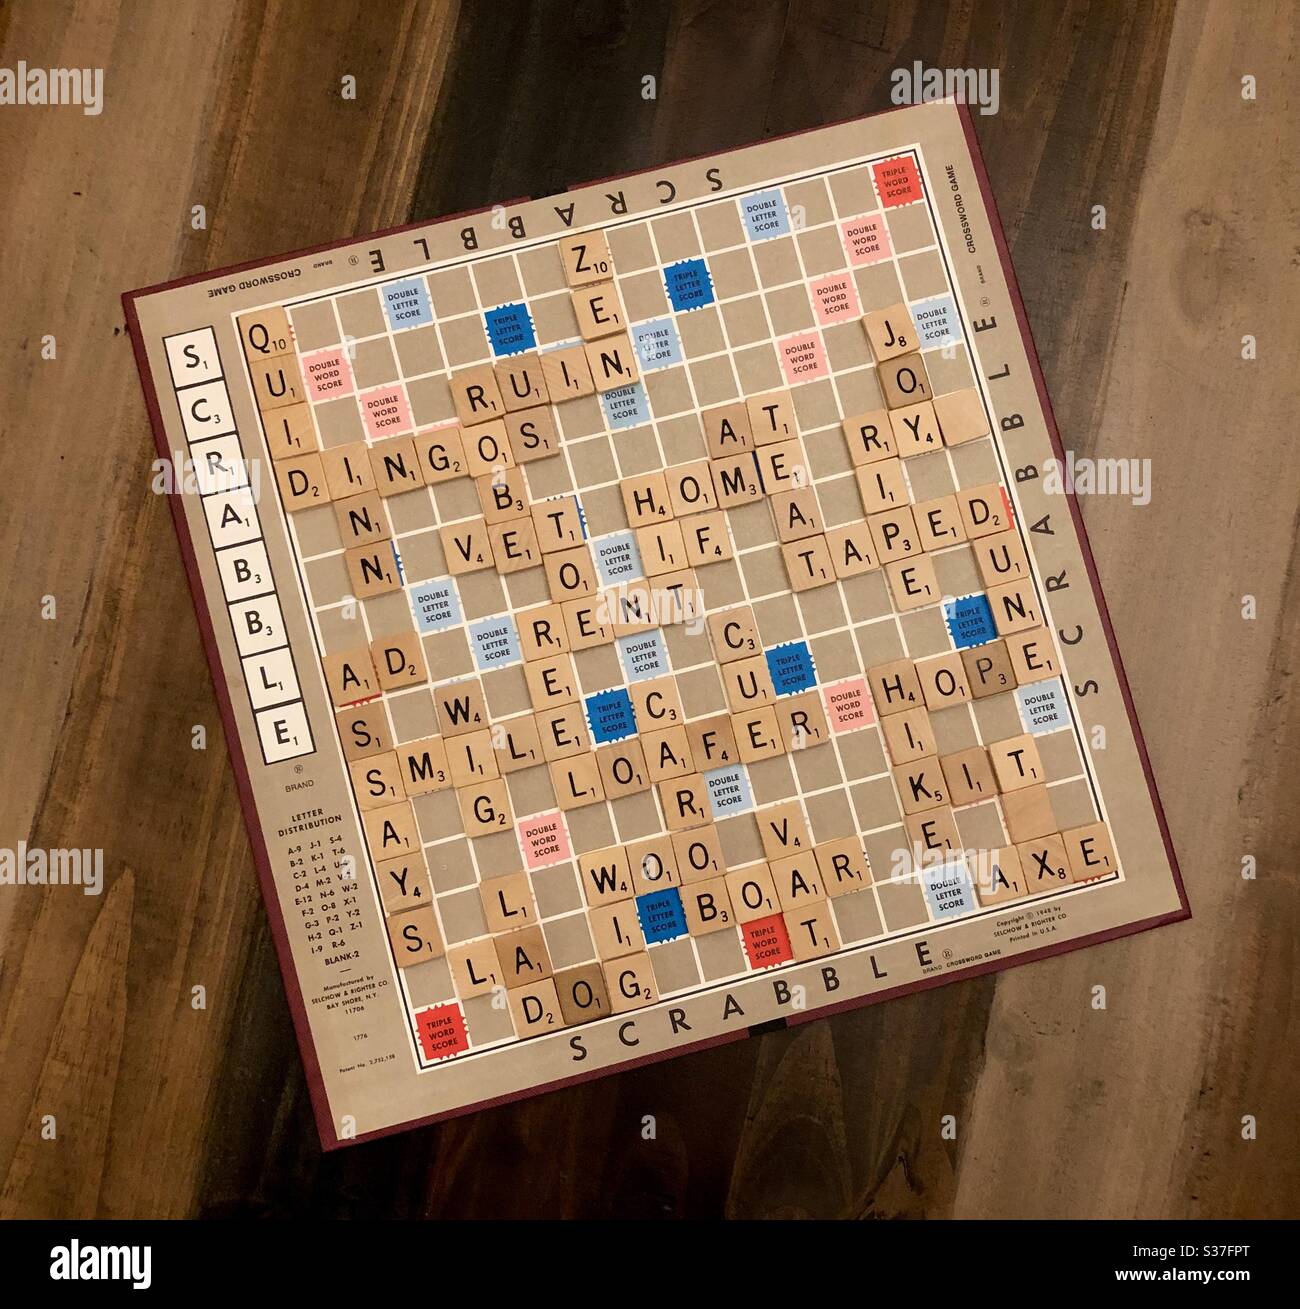 Un jeu de tableau Scrabble terminé utilisant des tuiles de lettres pour créer des mots. Banque D'Images